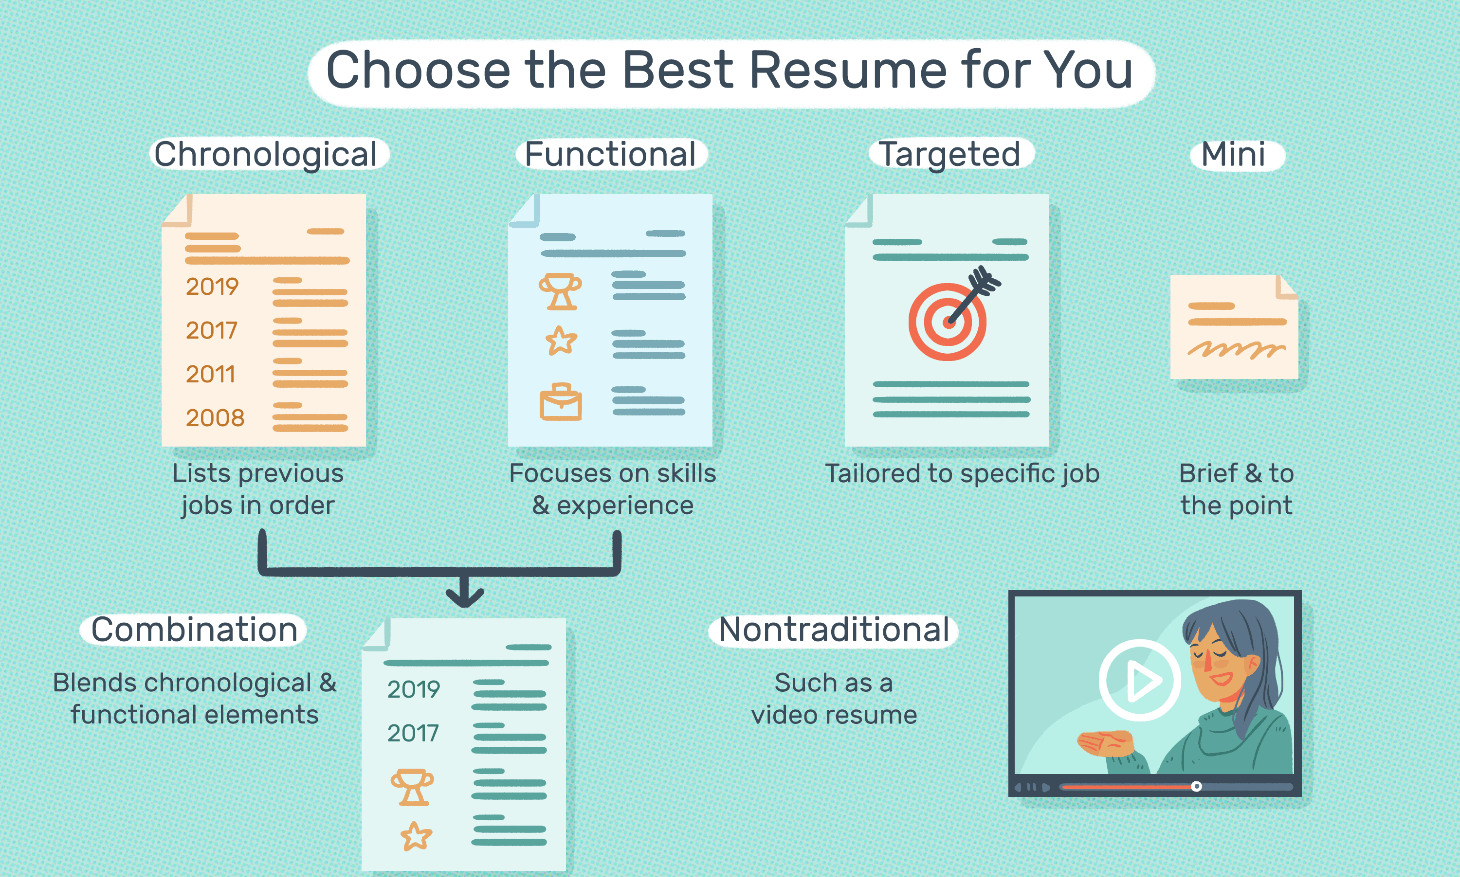 Free Resumé Sample – How to Make a Great Job Resumé